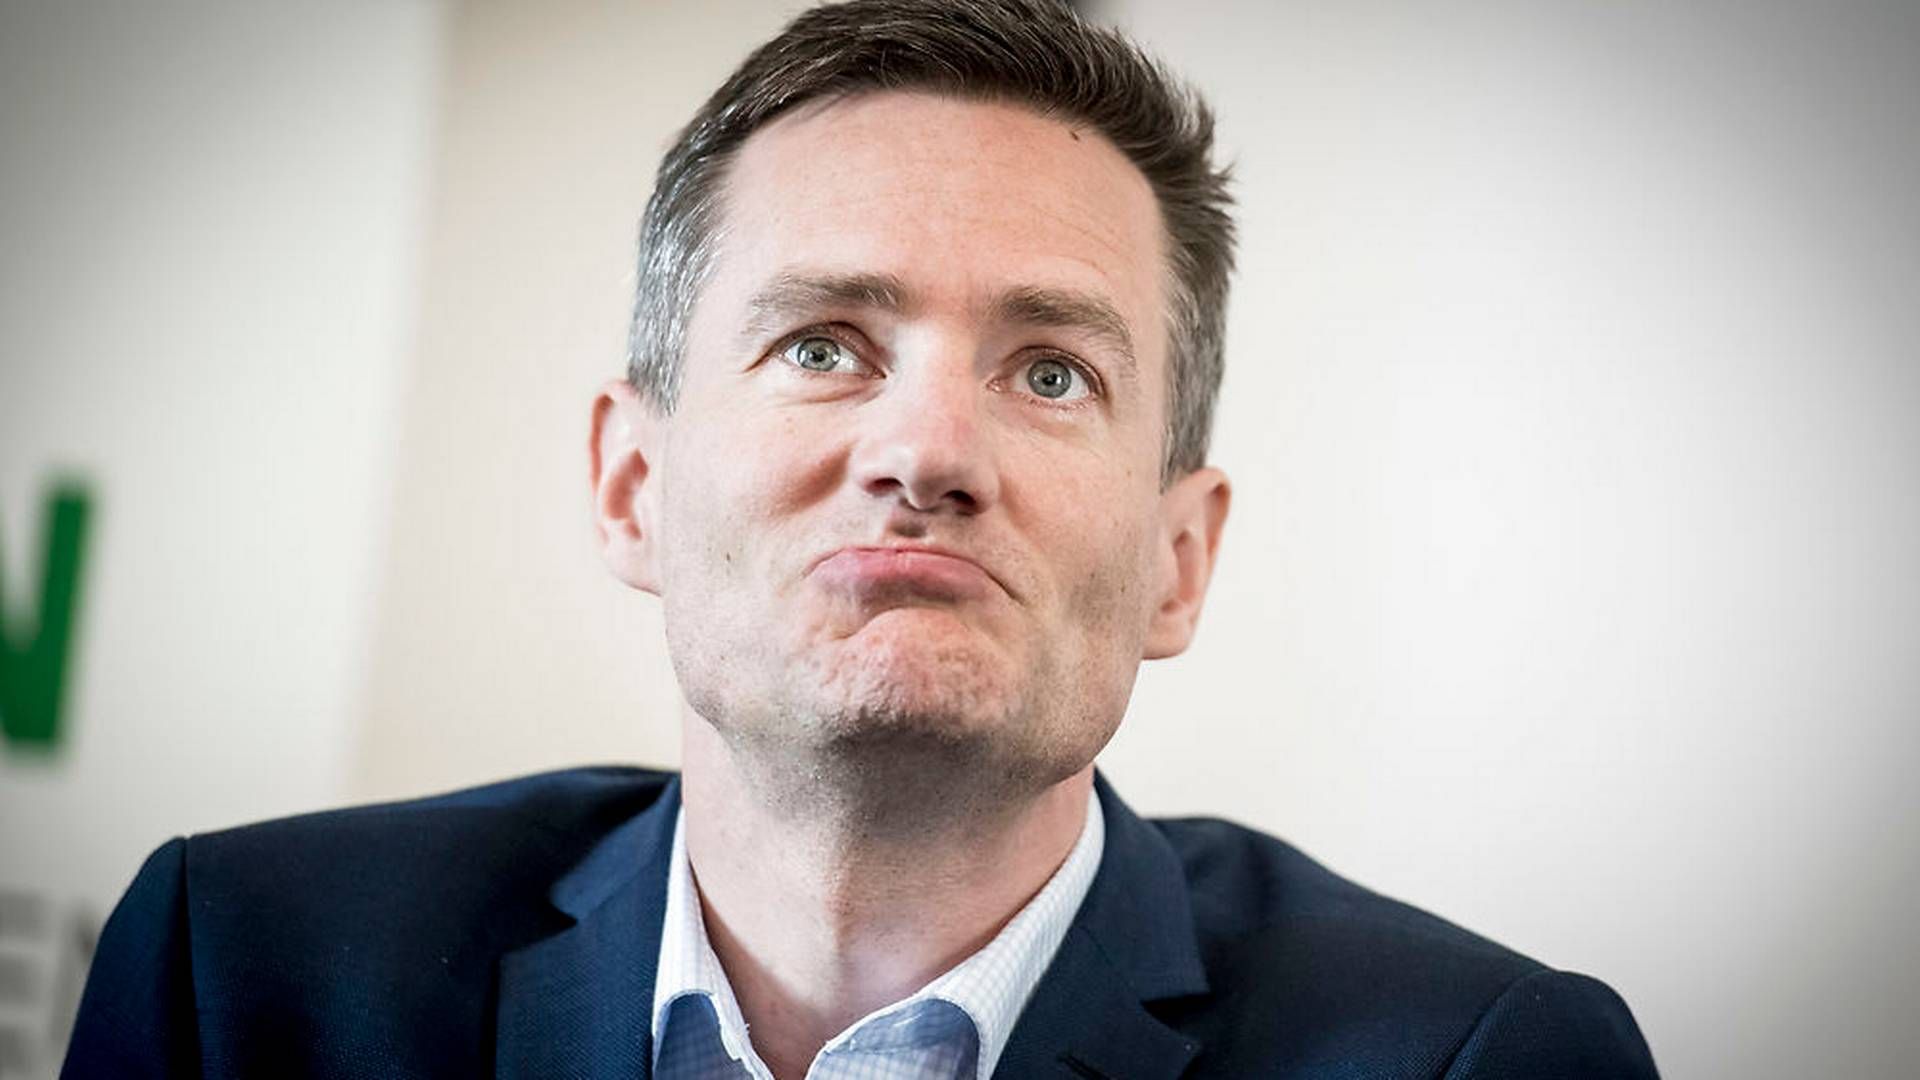 Erhvervsminister Rasmus Jarlov (K) mener, at De Konservative er det mest erhvervsvenlige parti. | Foto: Mads Claus Rasmussen/Ritzau Scanpix